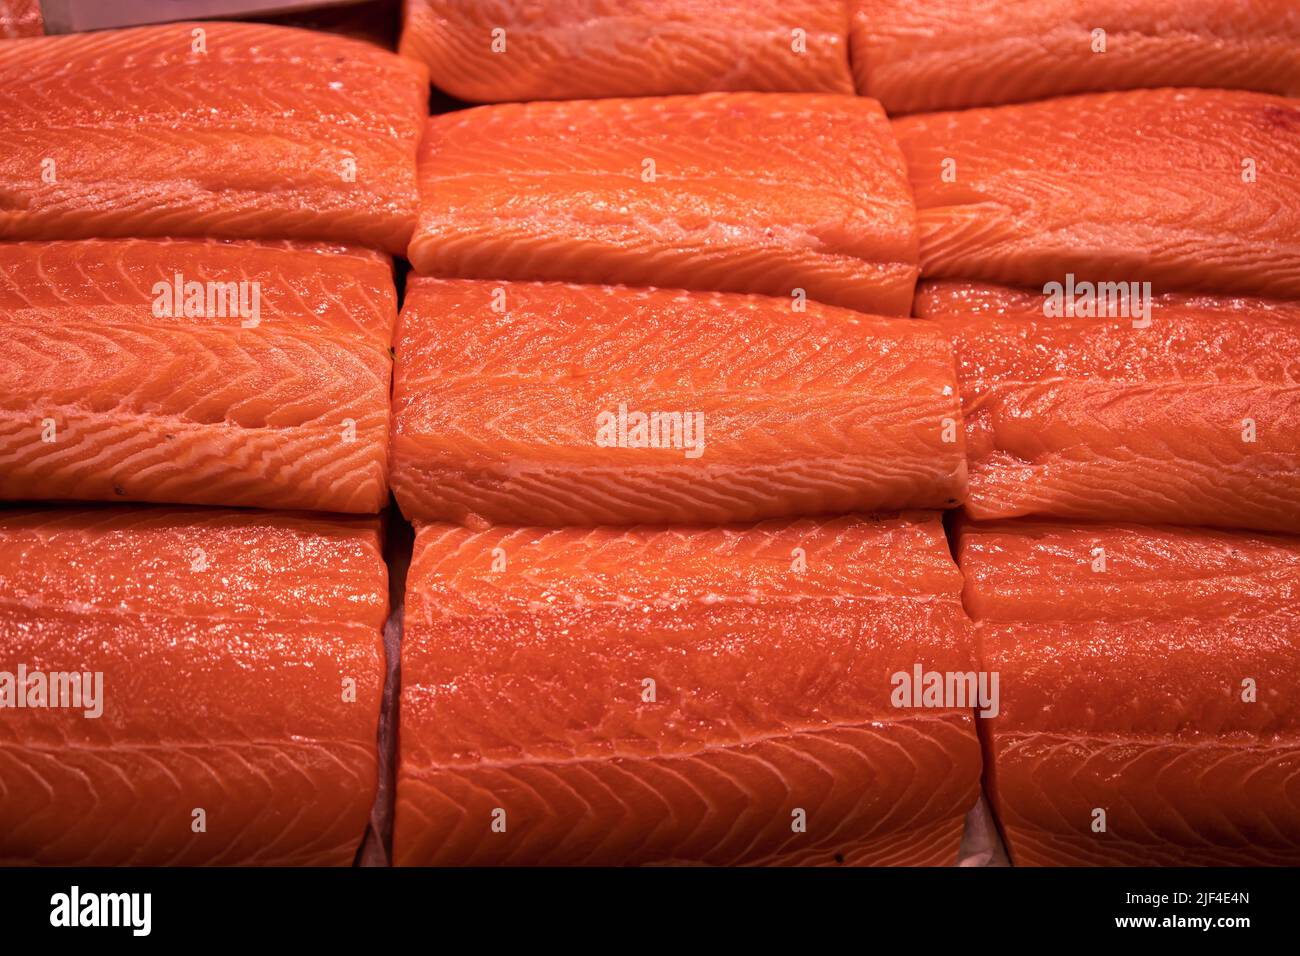 Varios filetes de salmón fresco. Comida de mar de alta clase social. Pescado crudo. Foto de stock